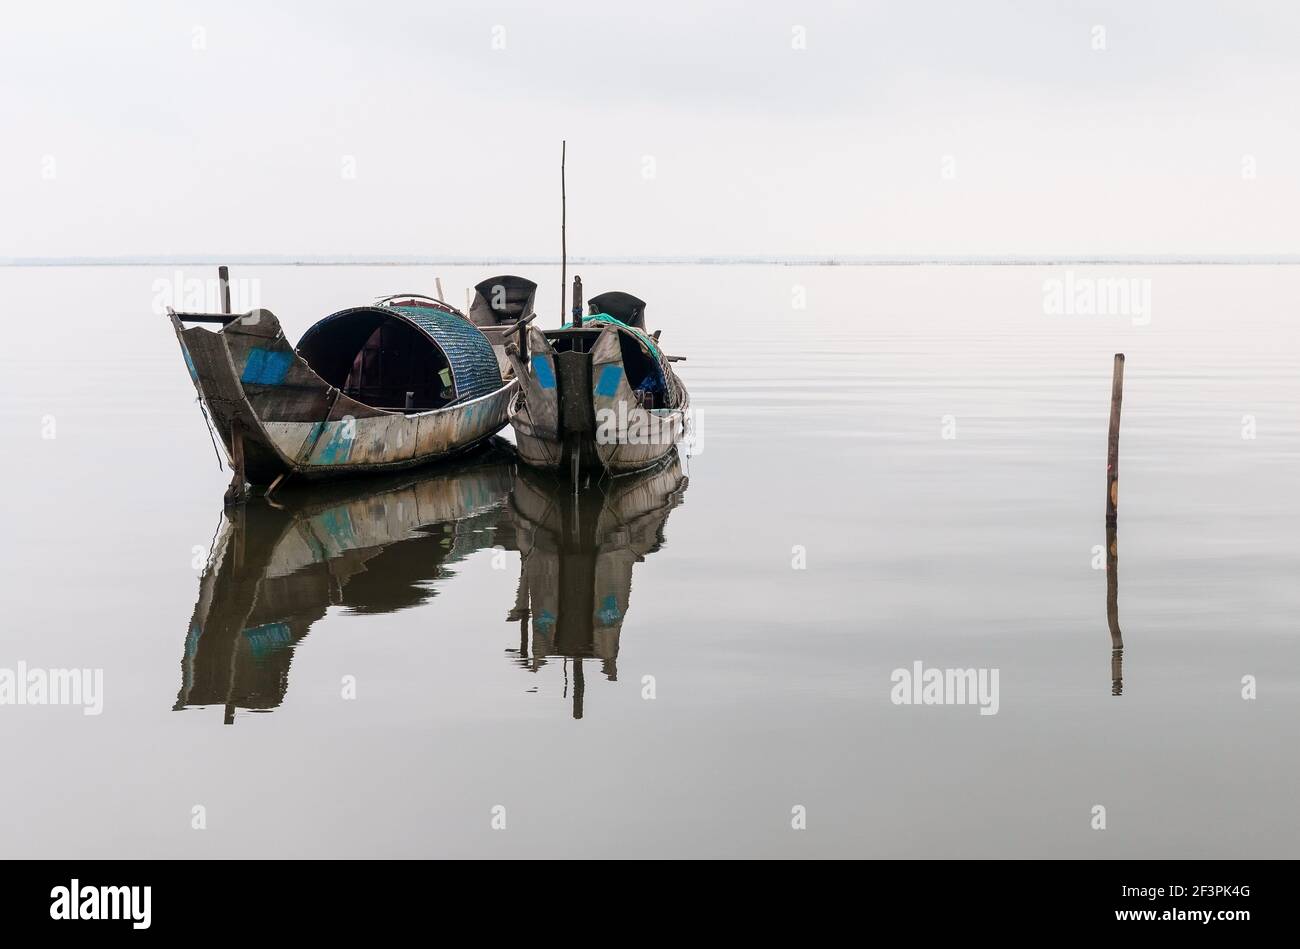 Deux bateaux de pêche à la crevette sampan avec une réflexion dans un lac entre Hue et Hoi an, centre du Vietnam. Banque D'Images